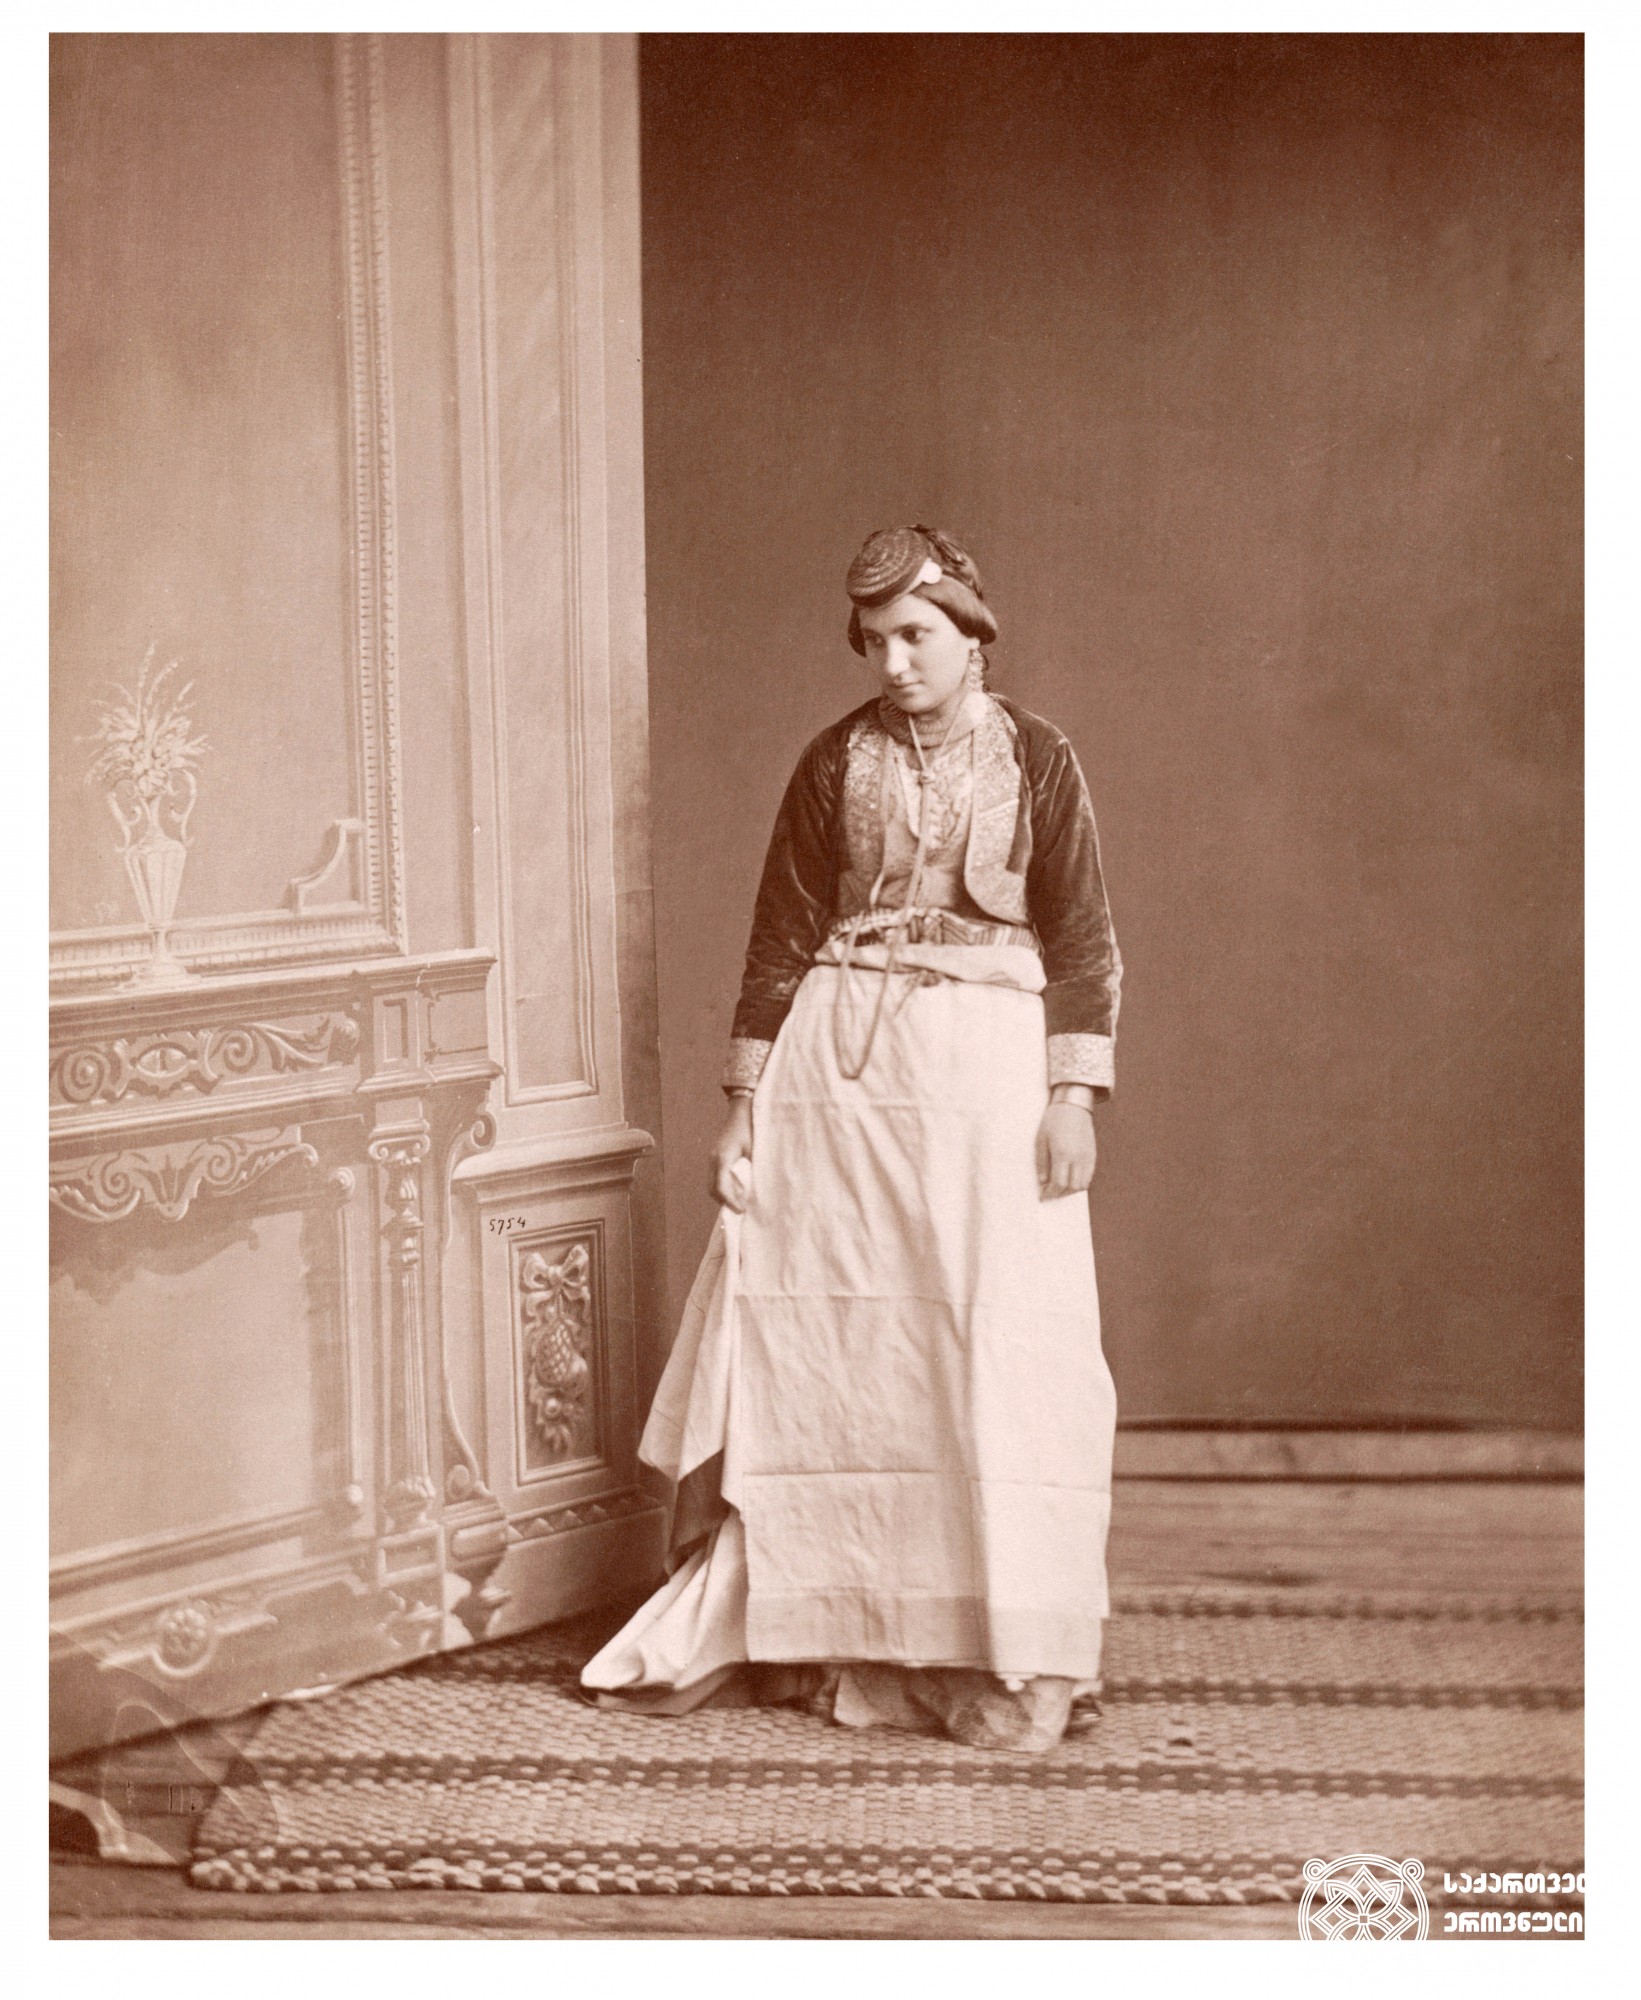 თურქეთში მცხოვრები ბერძენი ქალი
ფოტო: დიმიტრი ერმაკოვის კოლექციიდან. <br>
[1890-1910]. <br>
Greek woman living in Turkey. <br>
Photo from Dmitry Ermakov’s collection. <br>
[1890-1910].